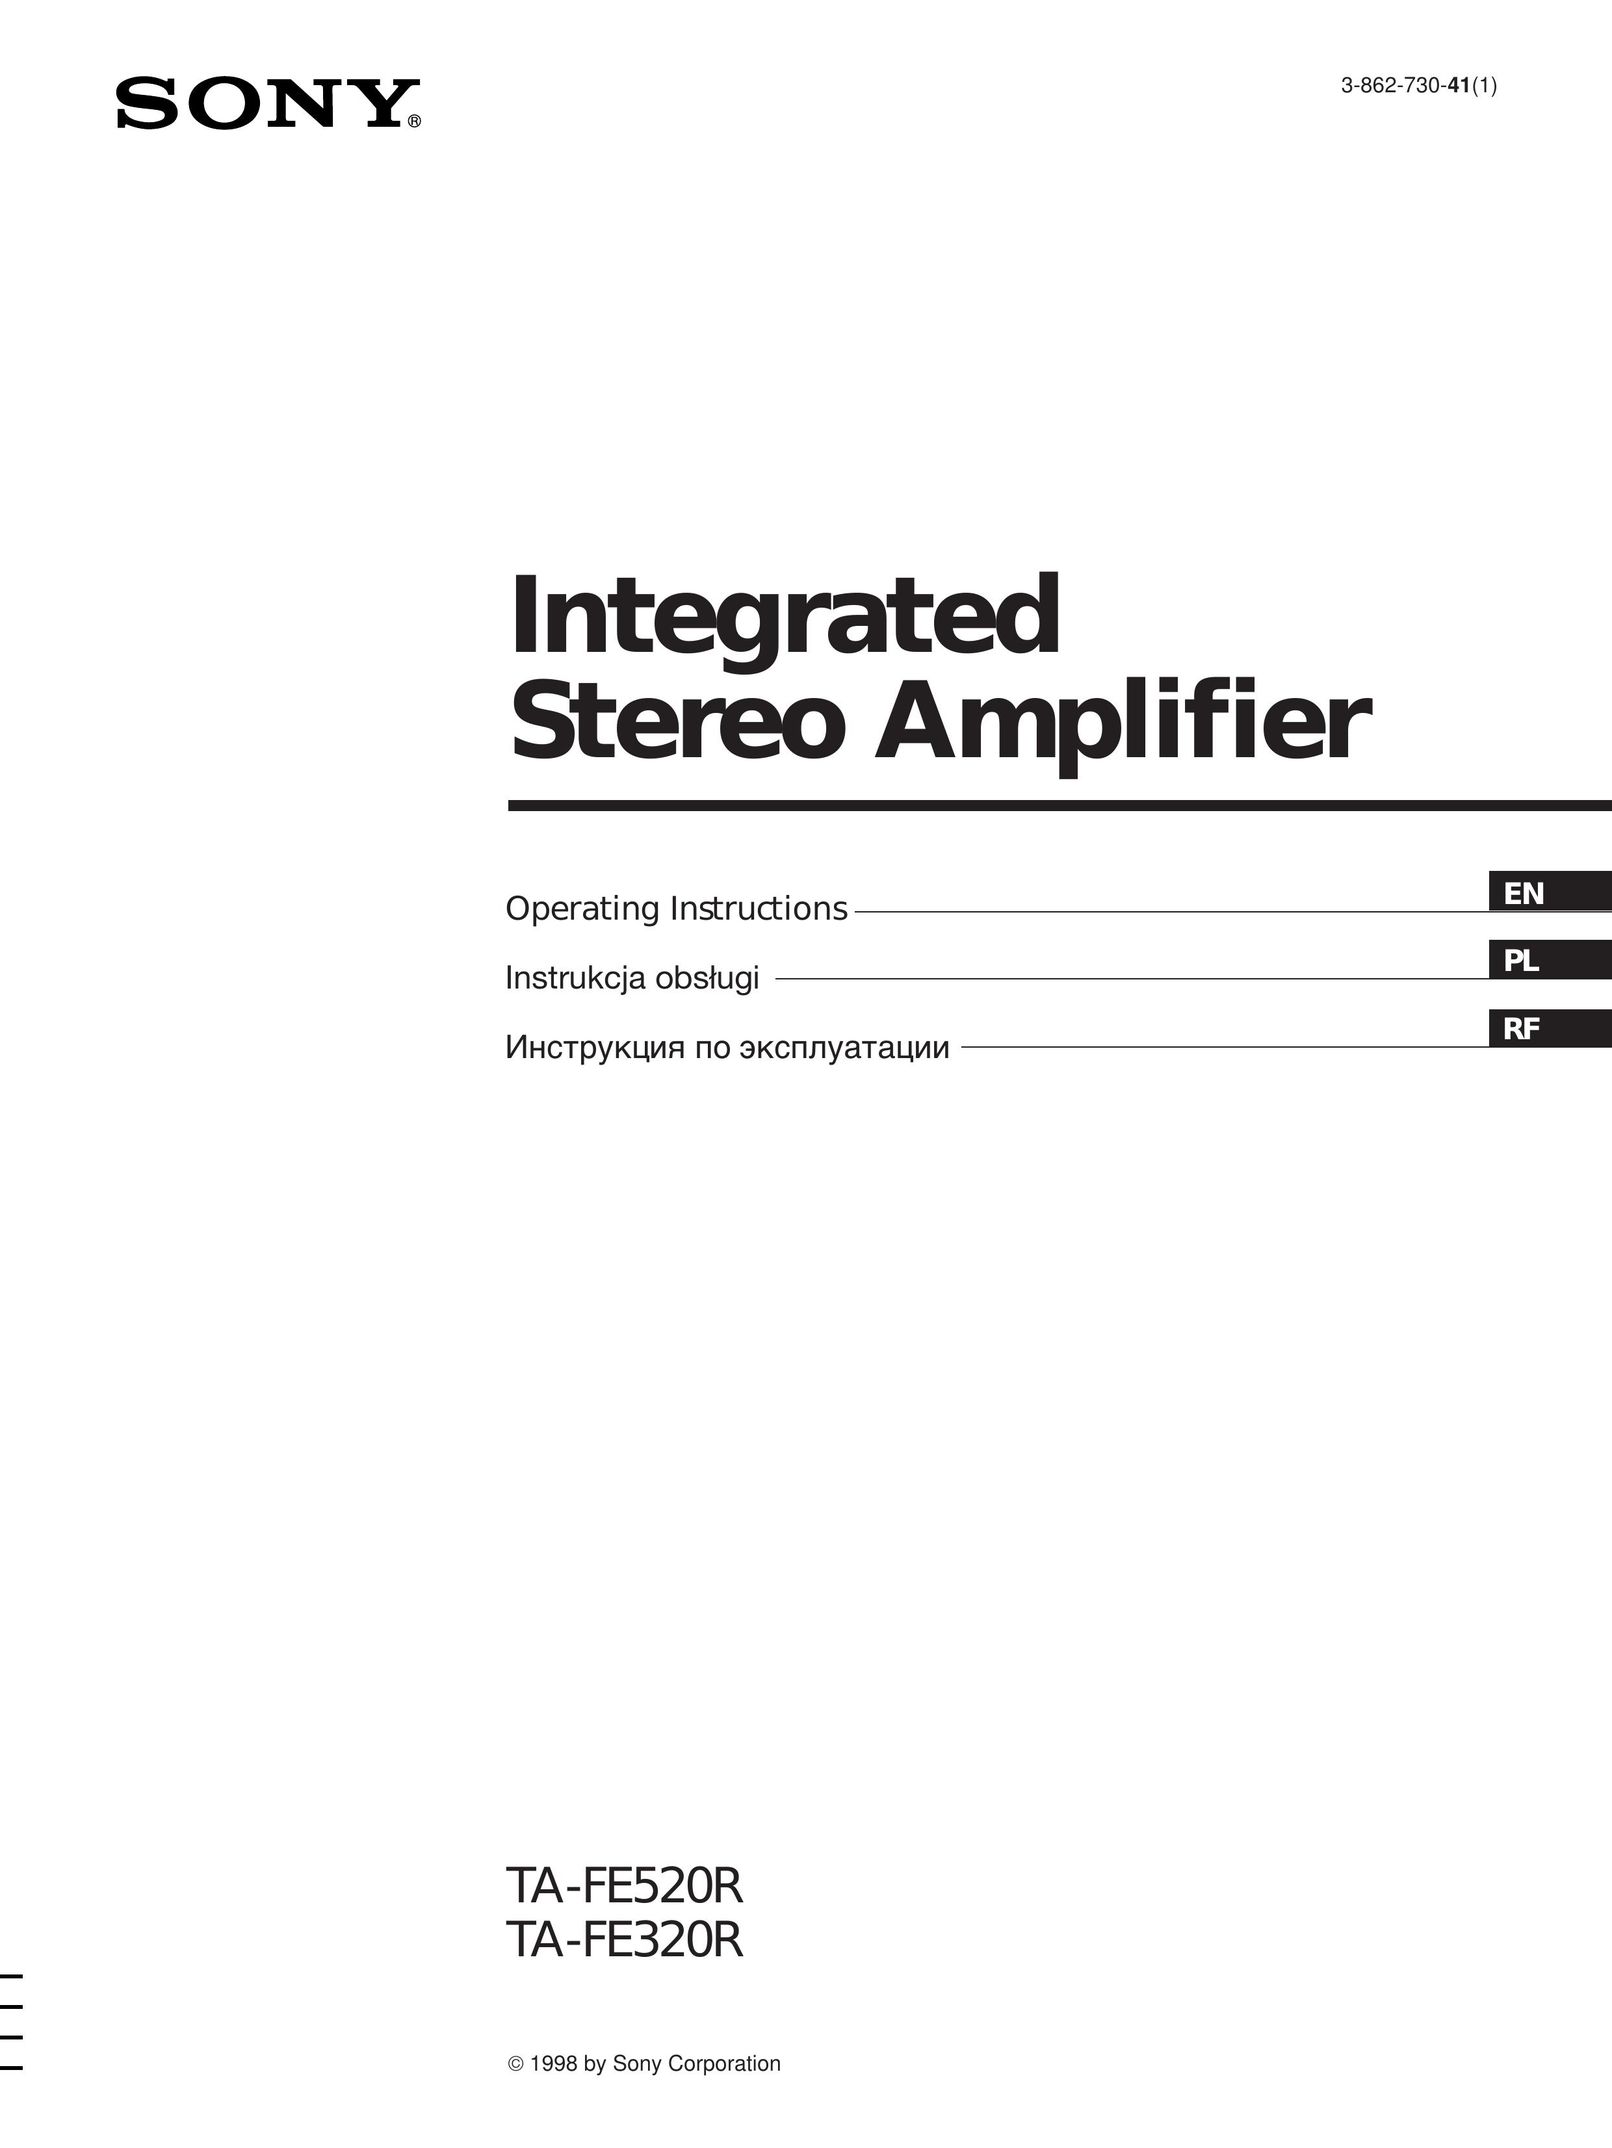 Sony TA-FE520R Stereo Amplifier User Manual